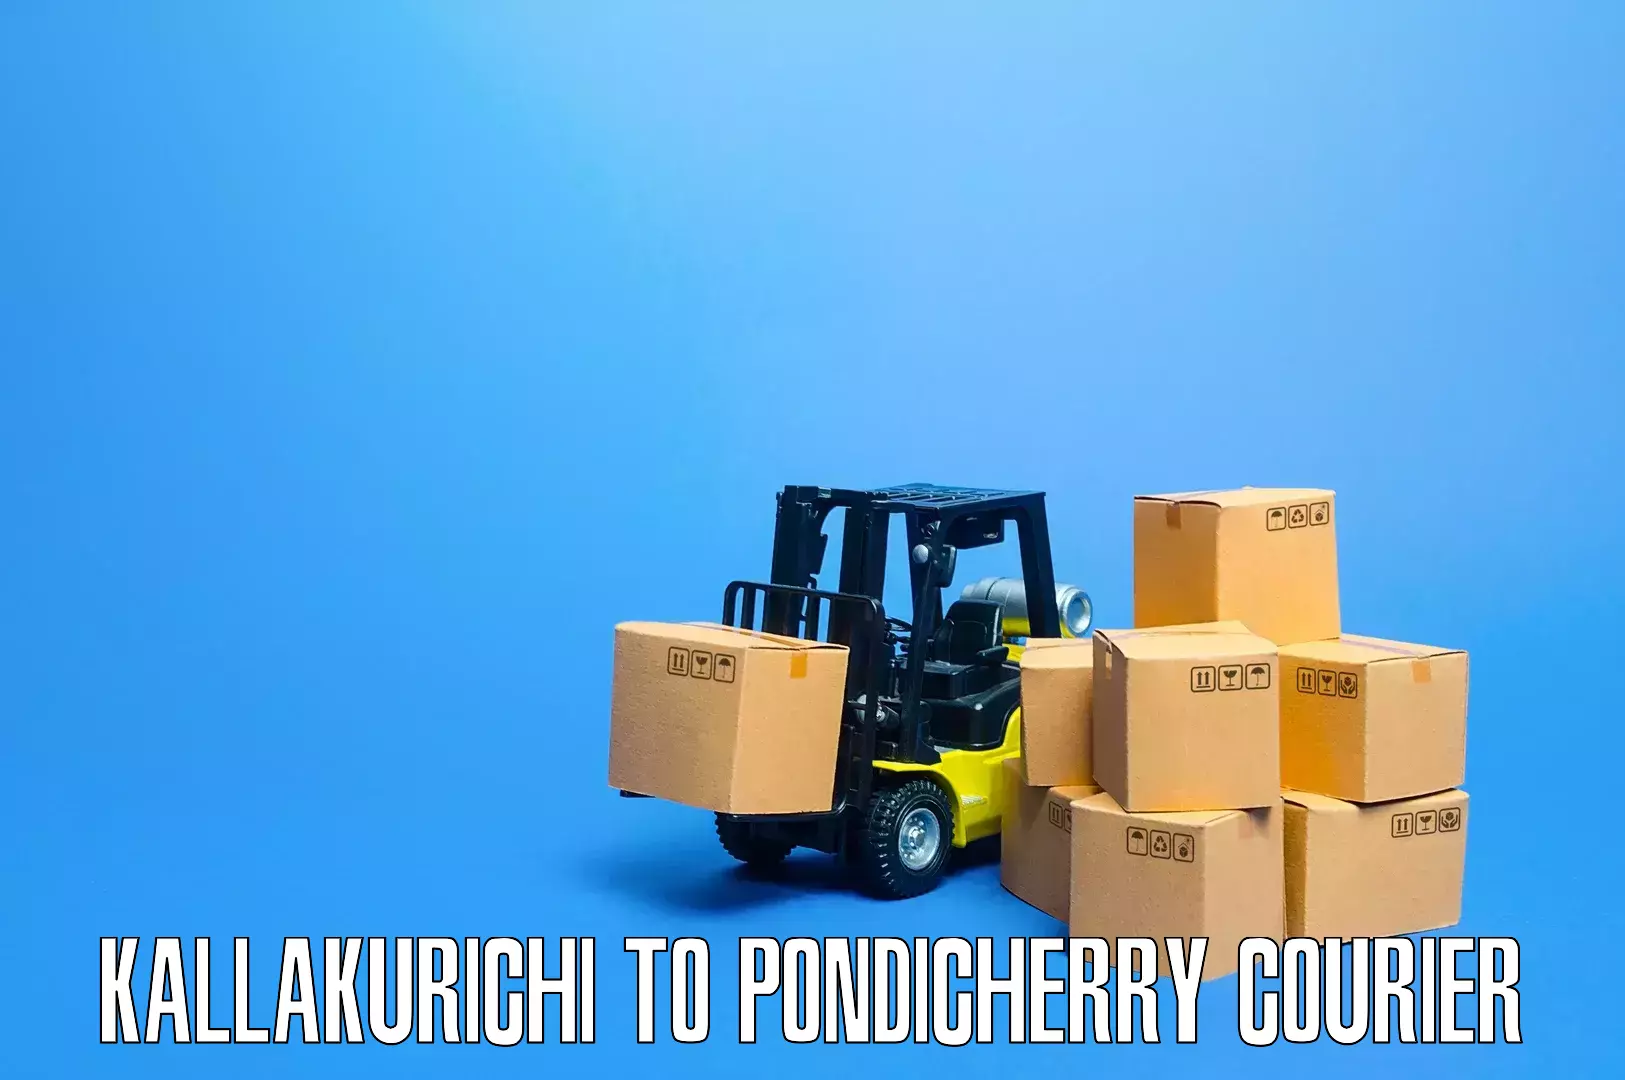 Household logistics services Kallakurichi to Pondicherry